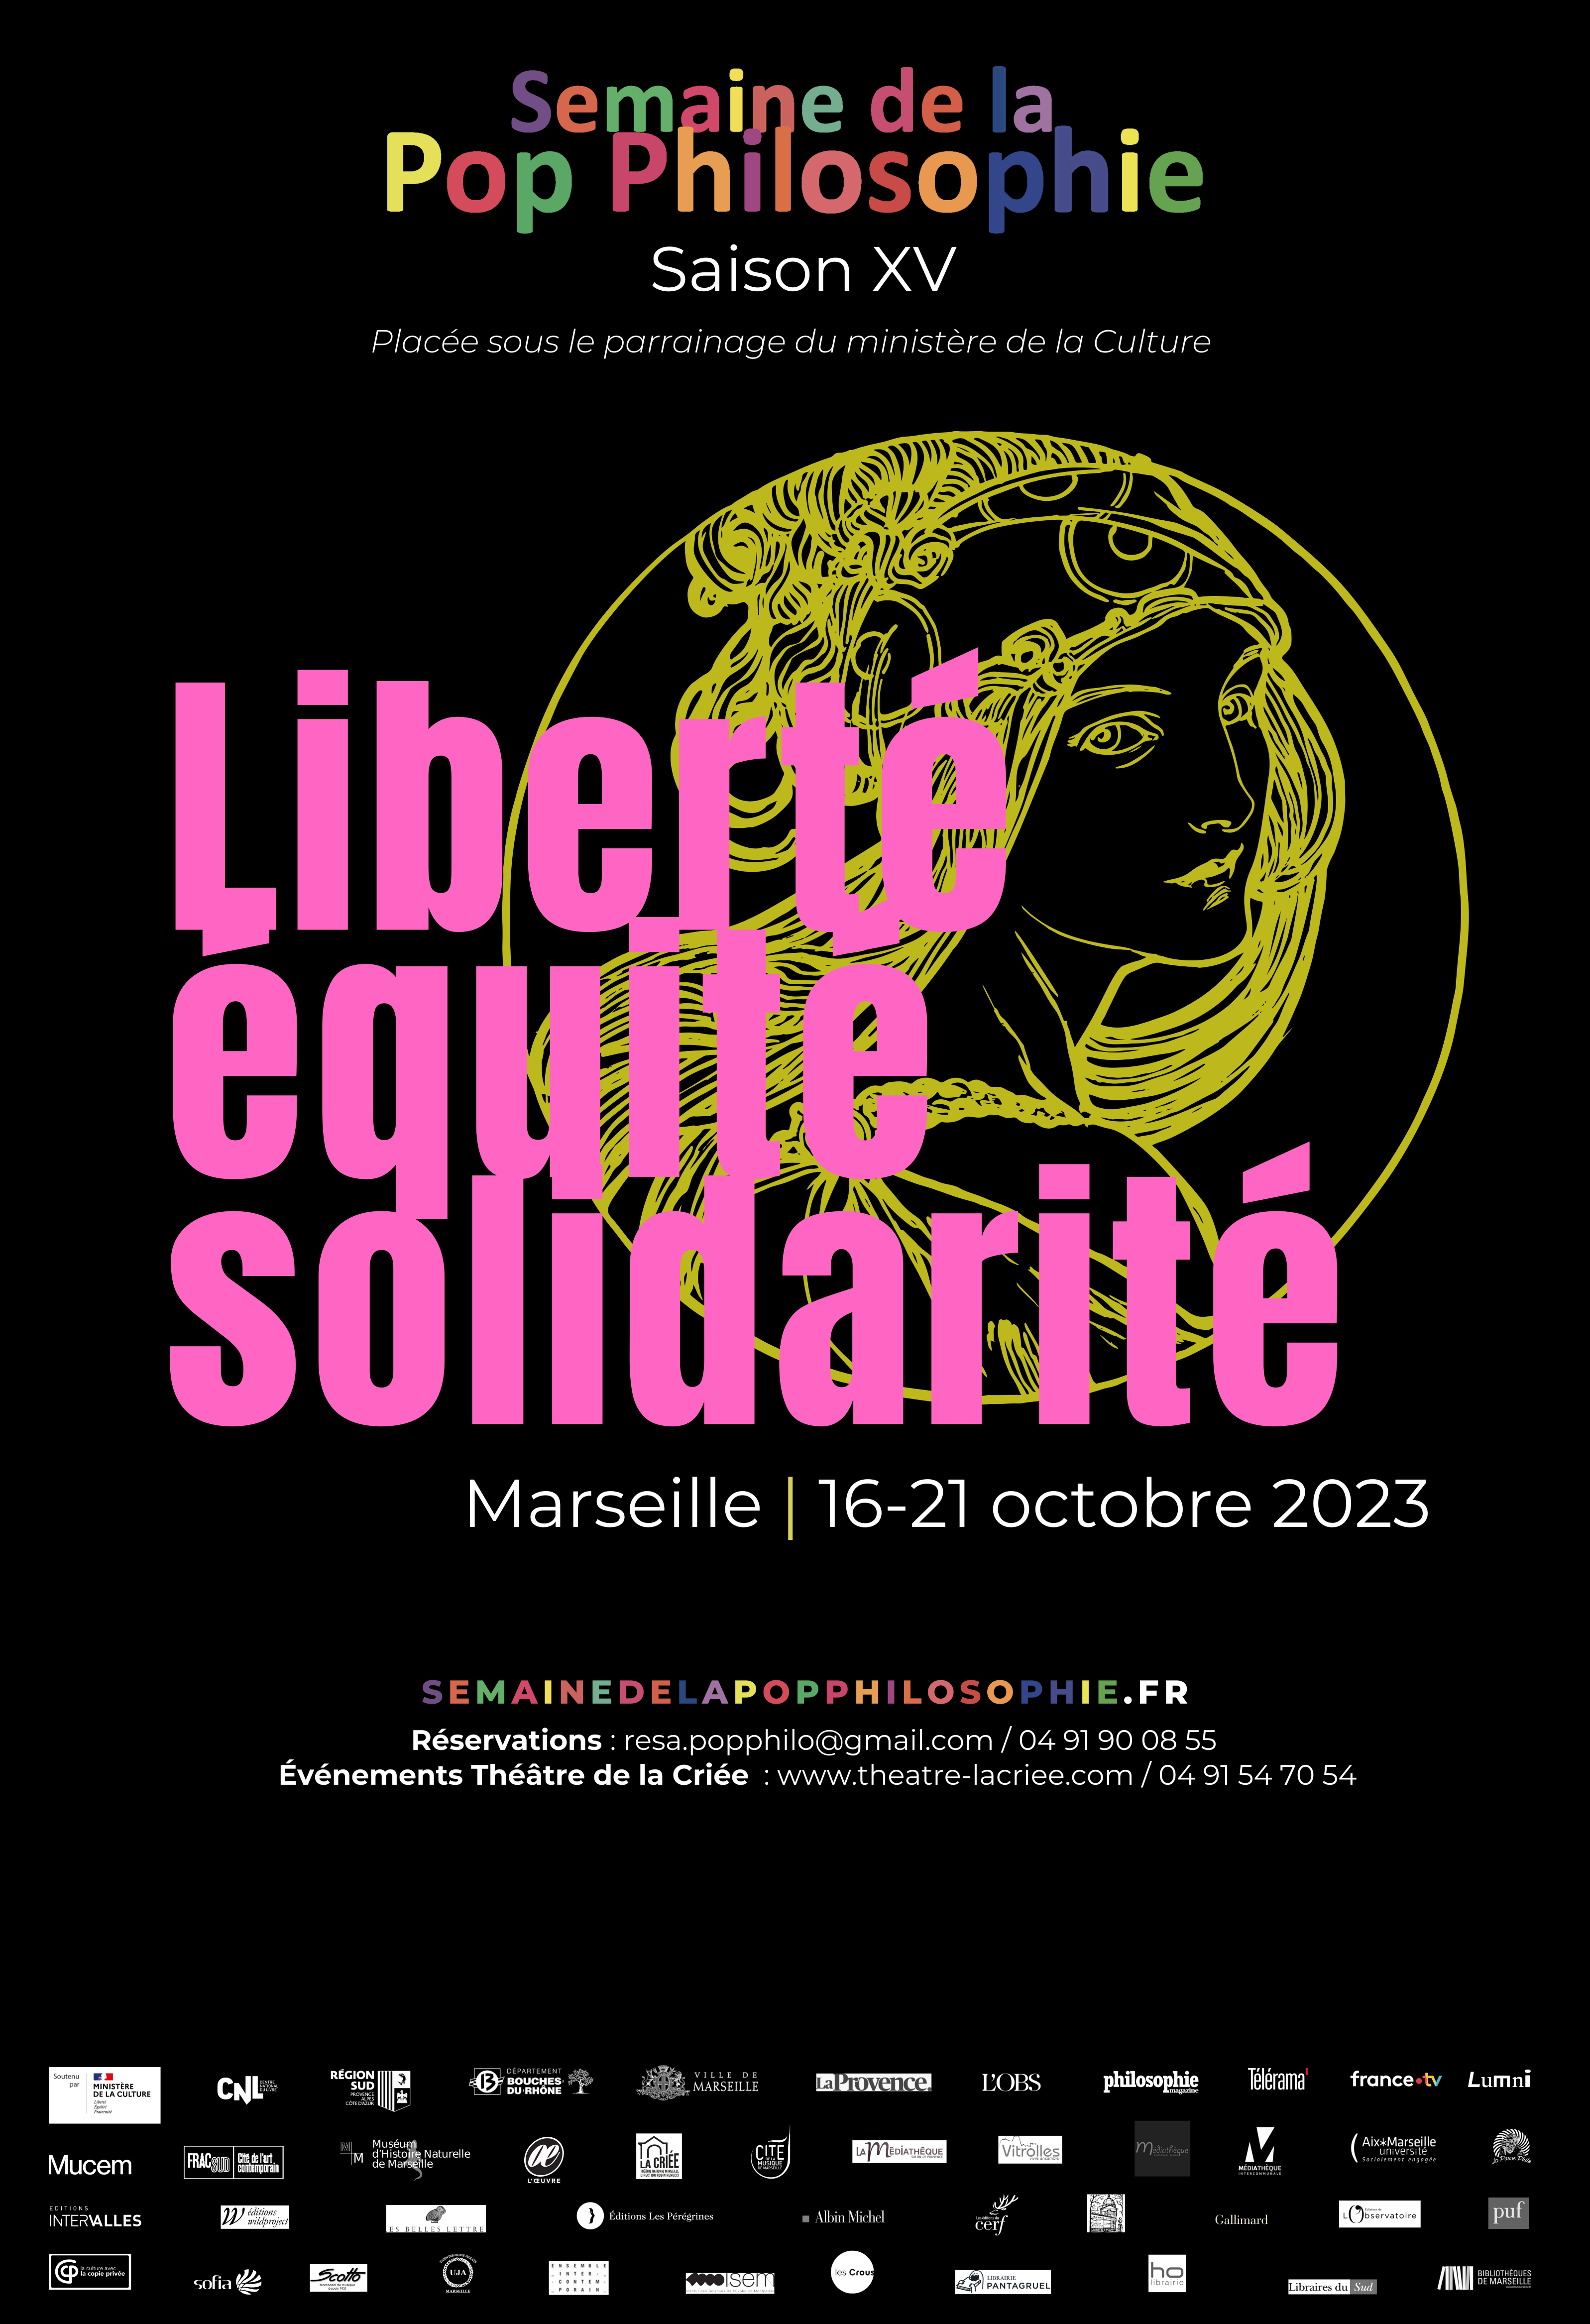 Semaine de la Pop Philosophie du 16 au 21 octobre 2023 à Marseille